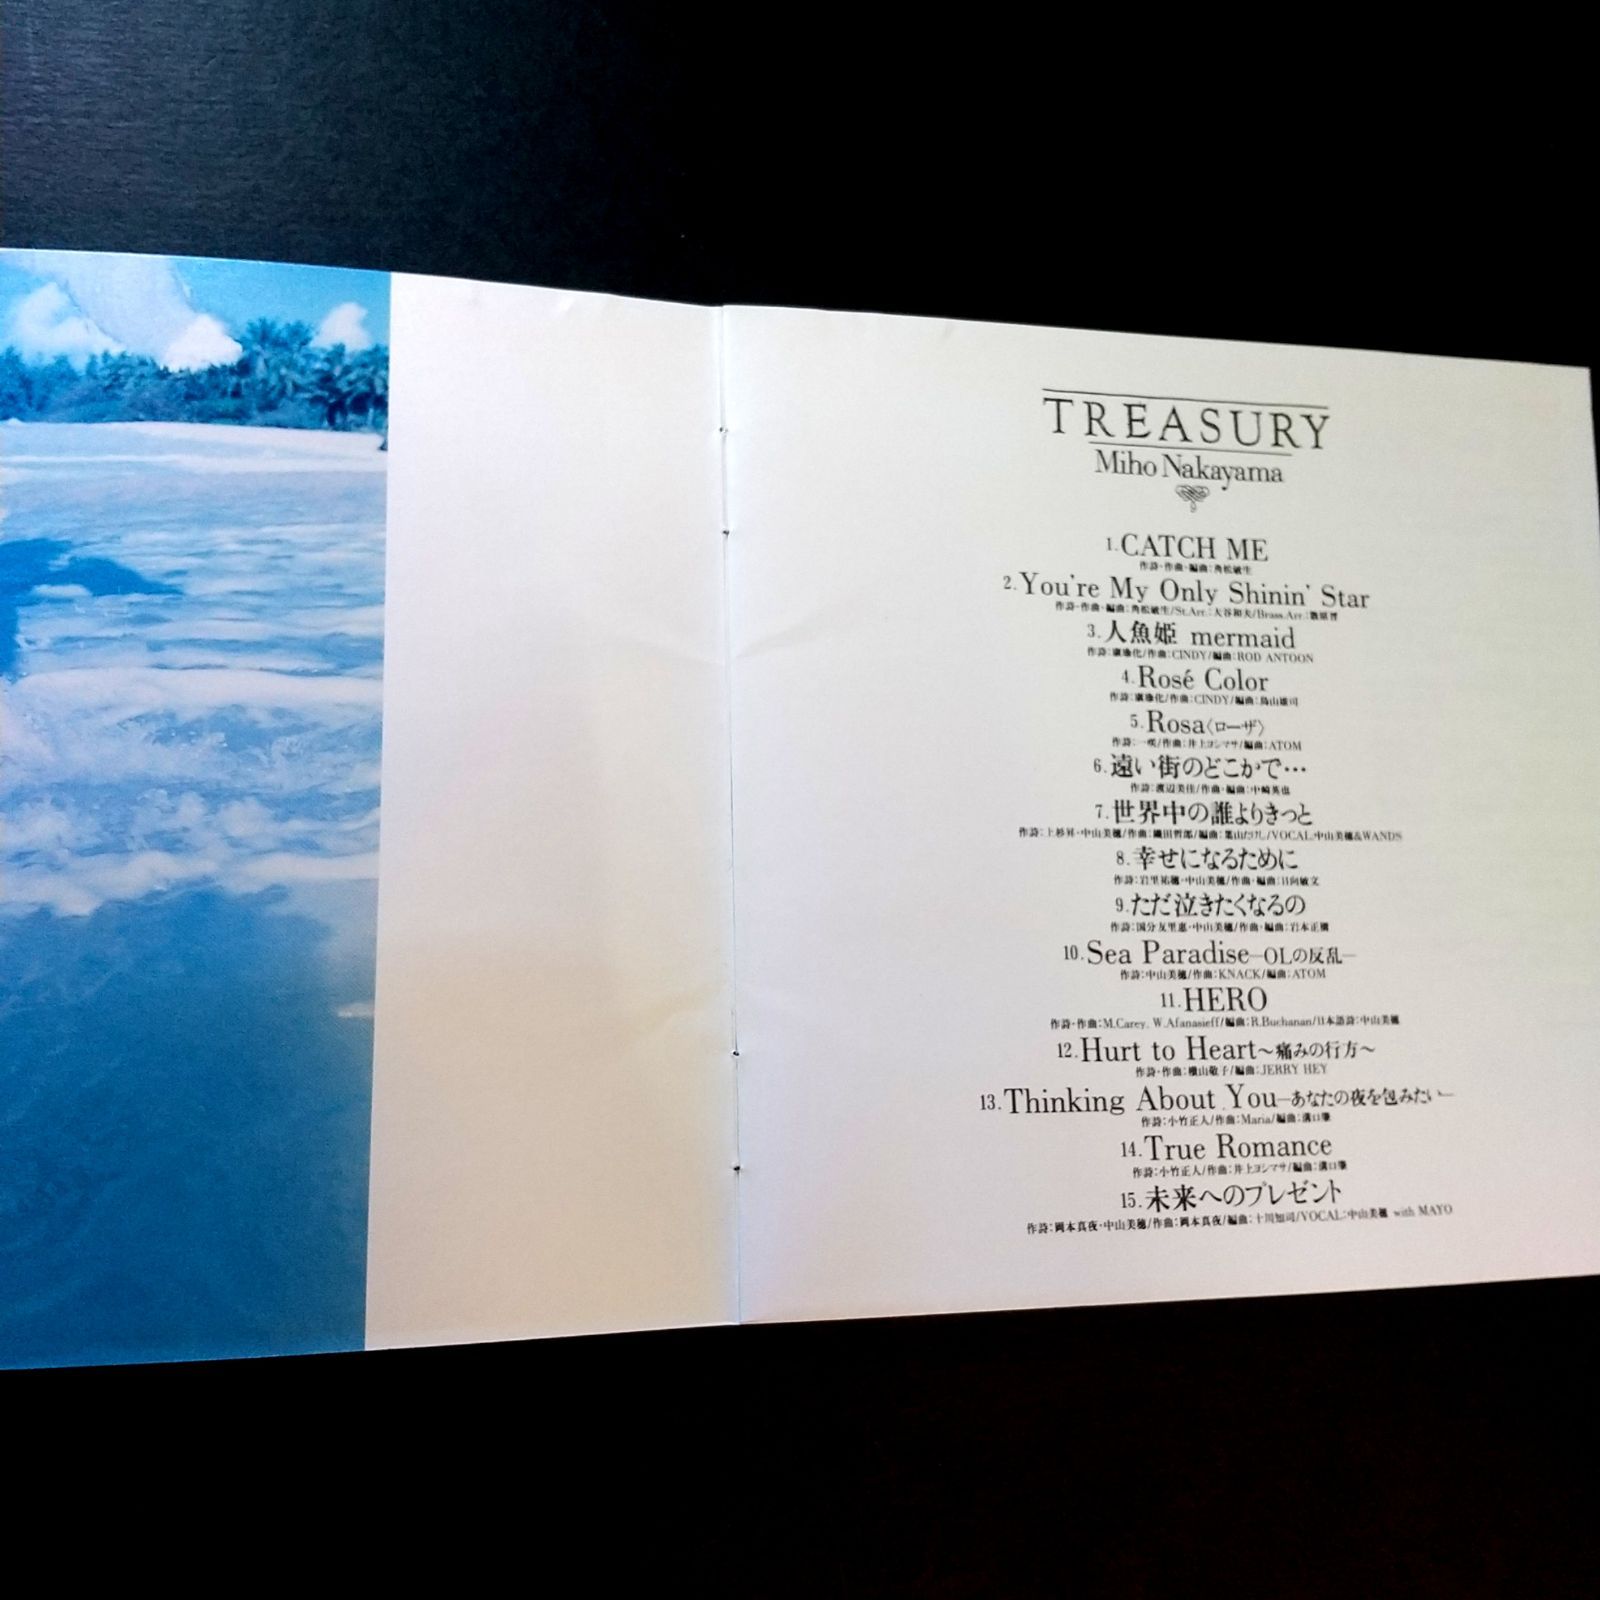 中山美穂「世界中の誰よりきっと」「ただ泣きたくなるの」「未来へのプレゼント」他を収録ベスト・アルバム。 TREASURY トレジャリー